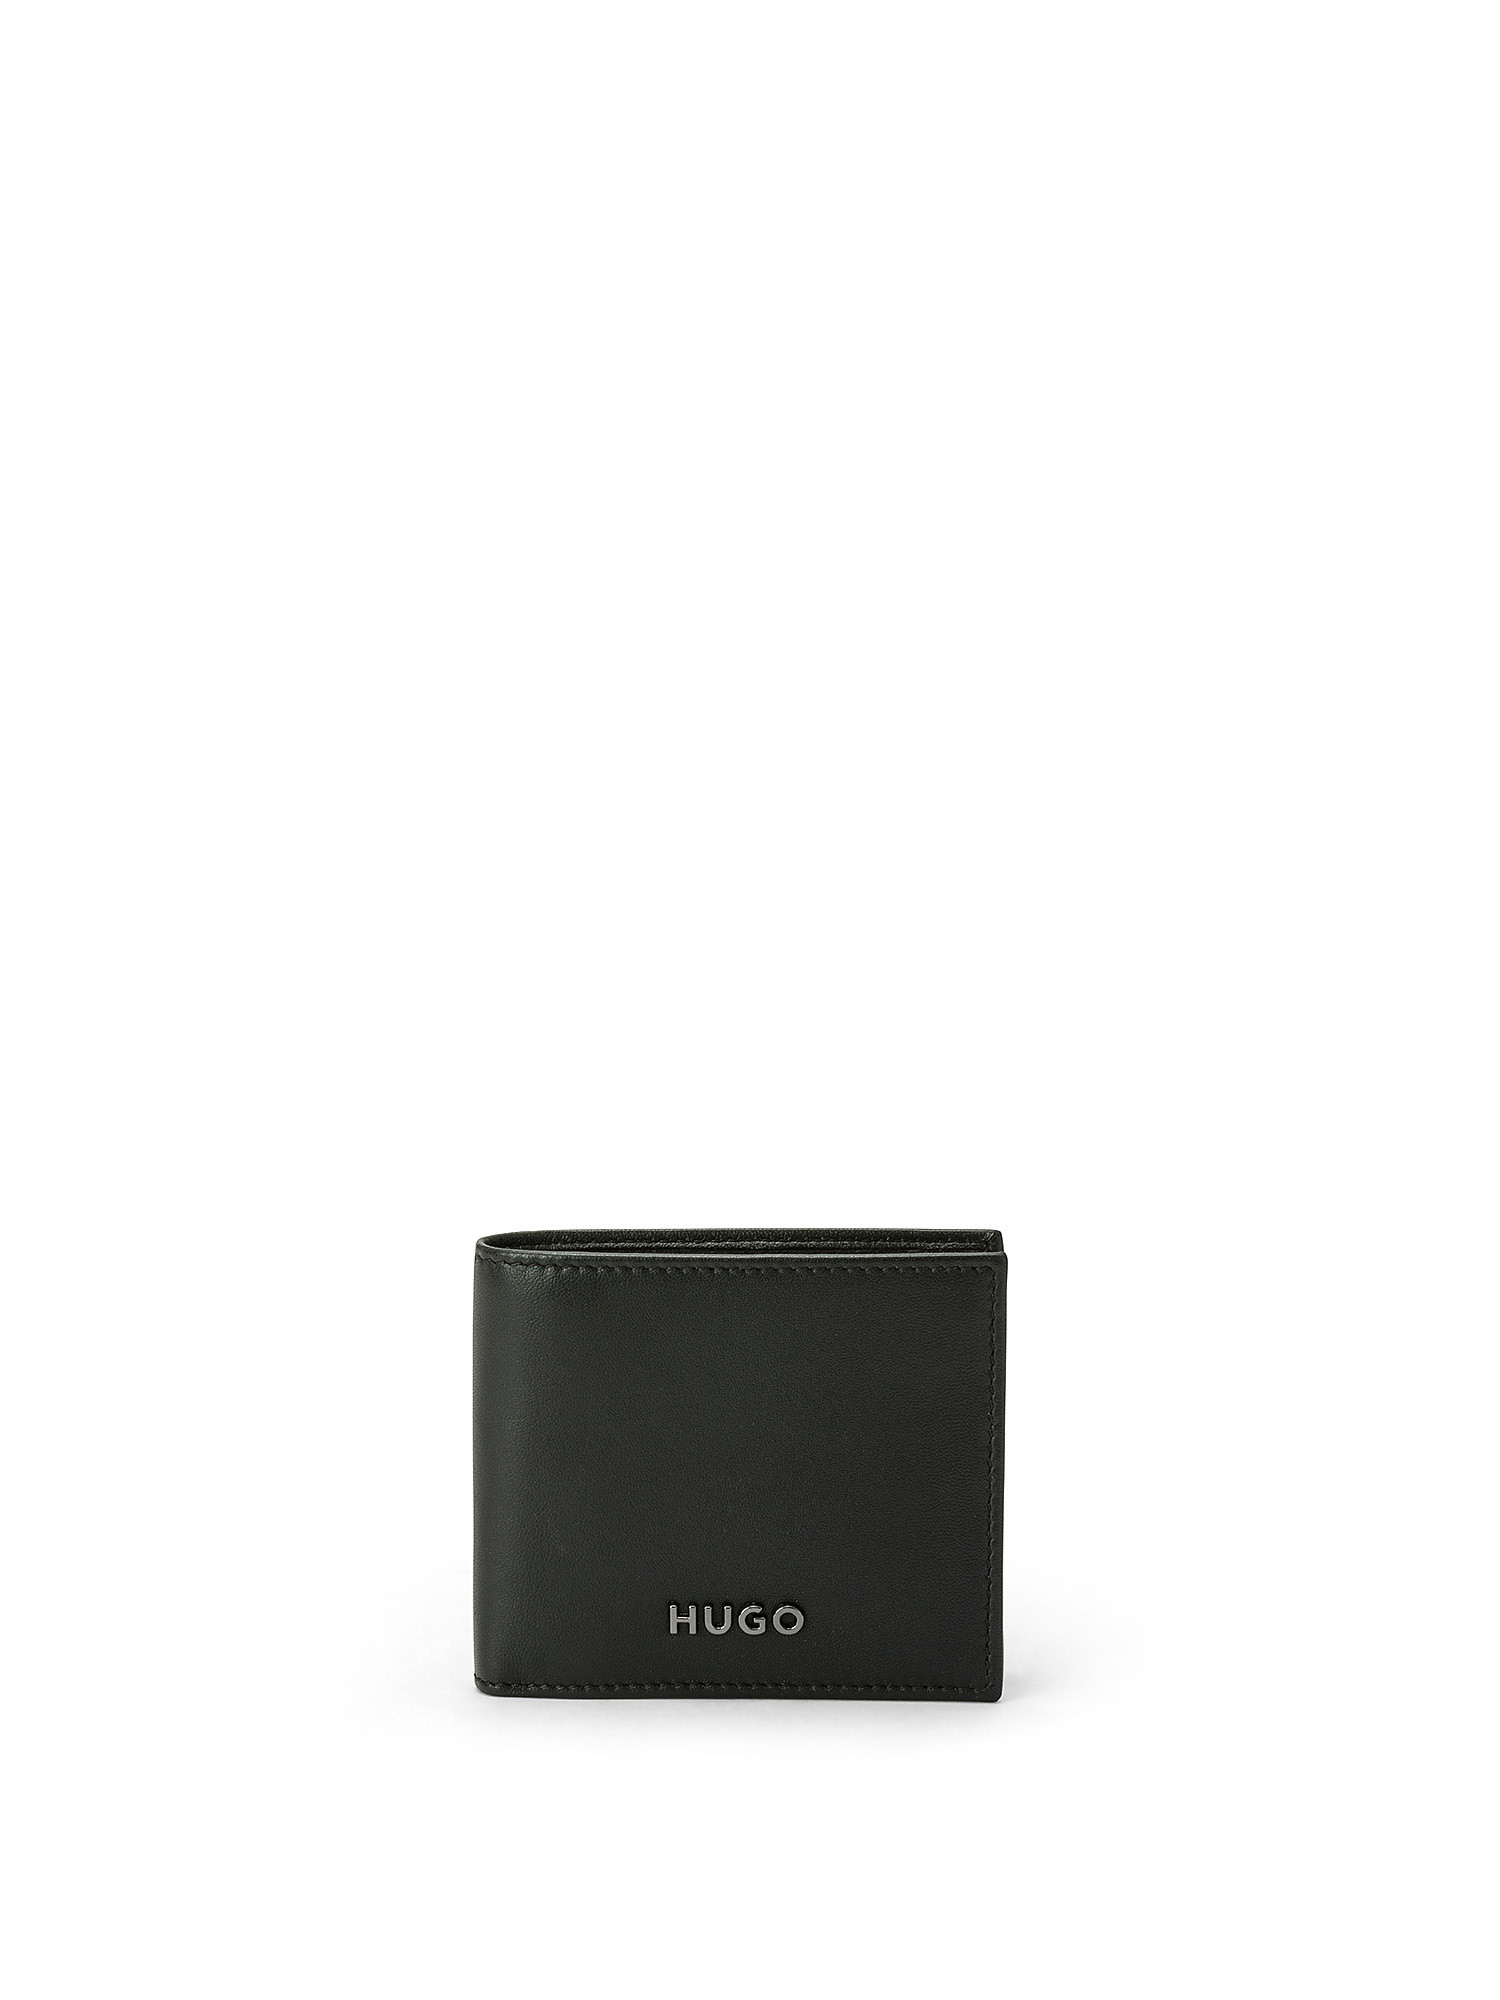 Hugo - Leather wallet with logo, Black, large image number 0